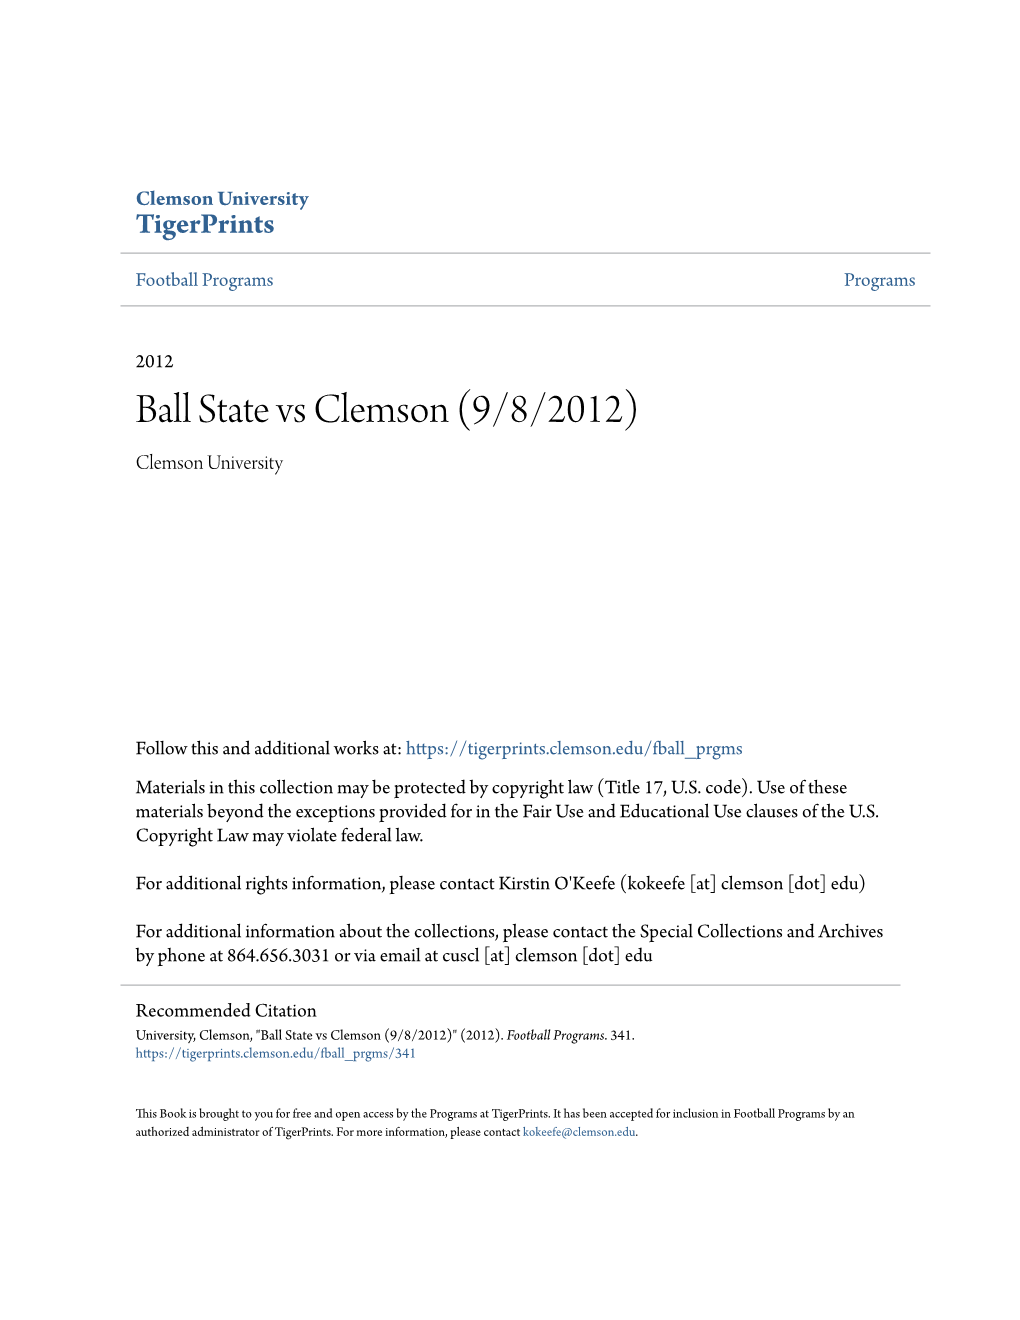 Ball State Vs Clemson (9/8/2012) Clemson University